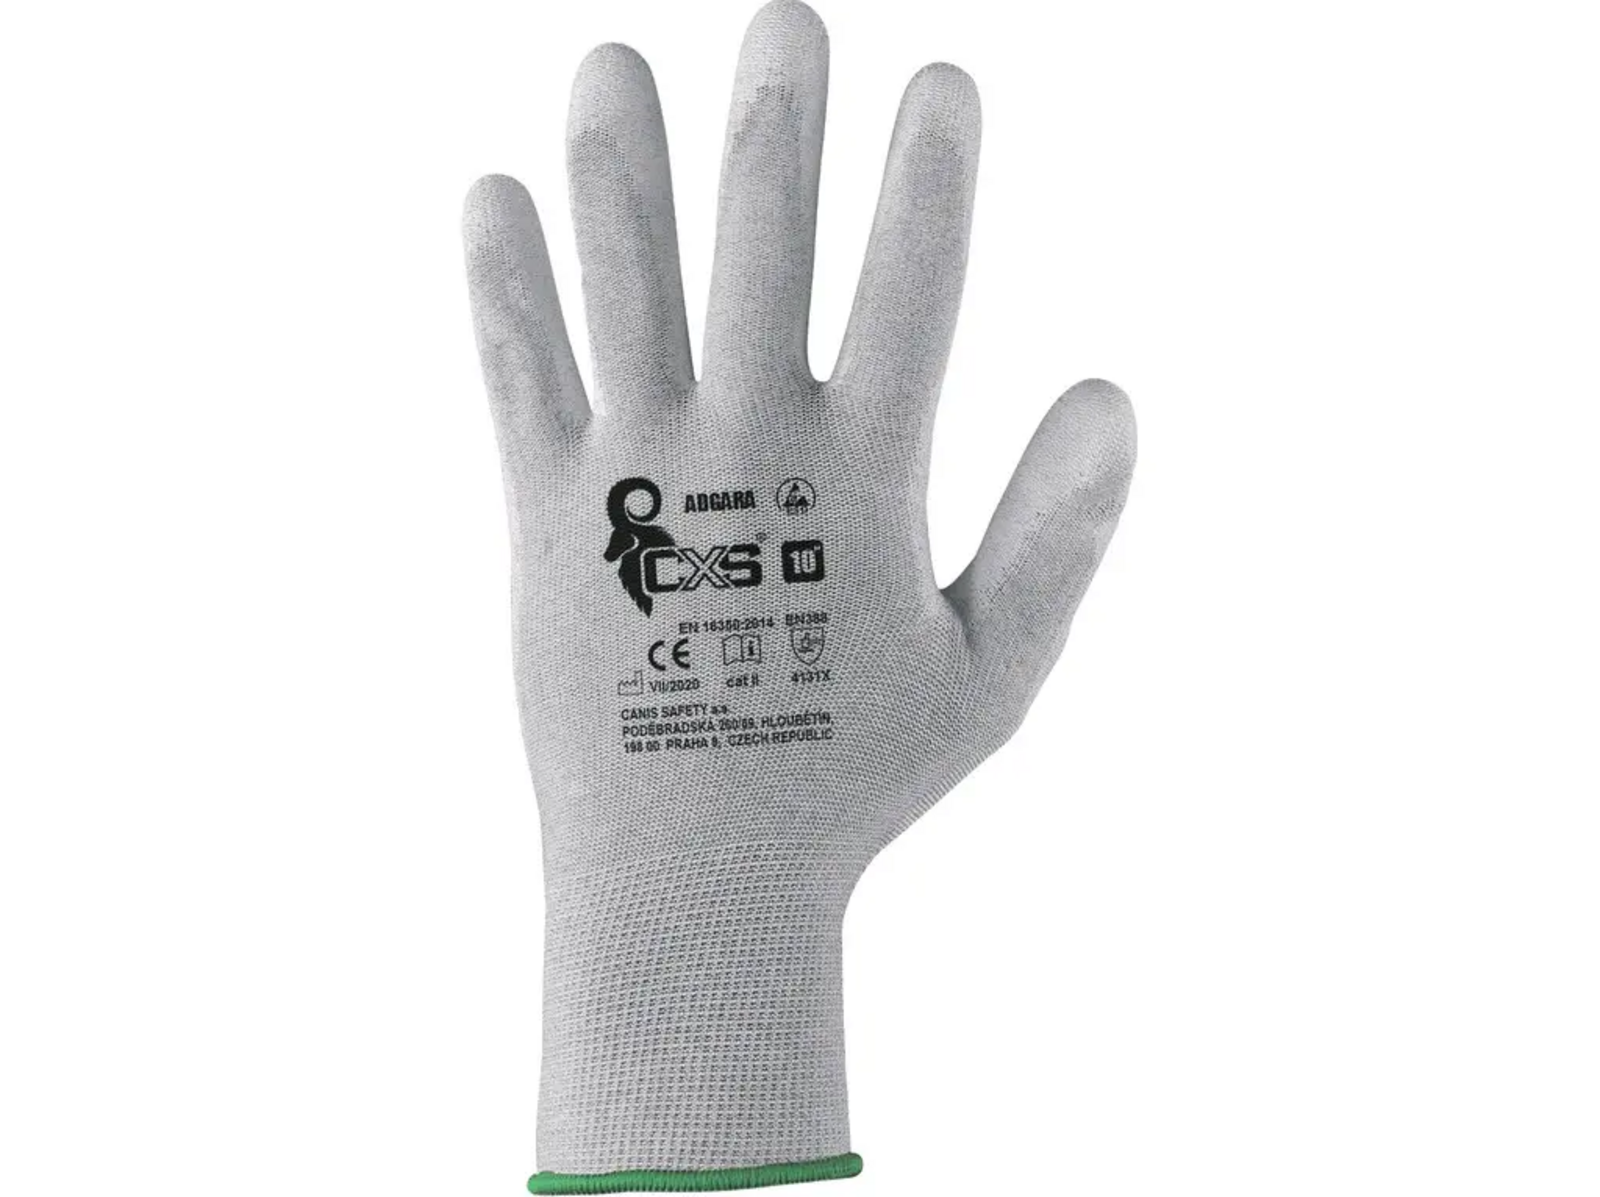 Povrstvené antistatické rukavice CXS Adgara - veľkosť: 6/XS, farba: sivá